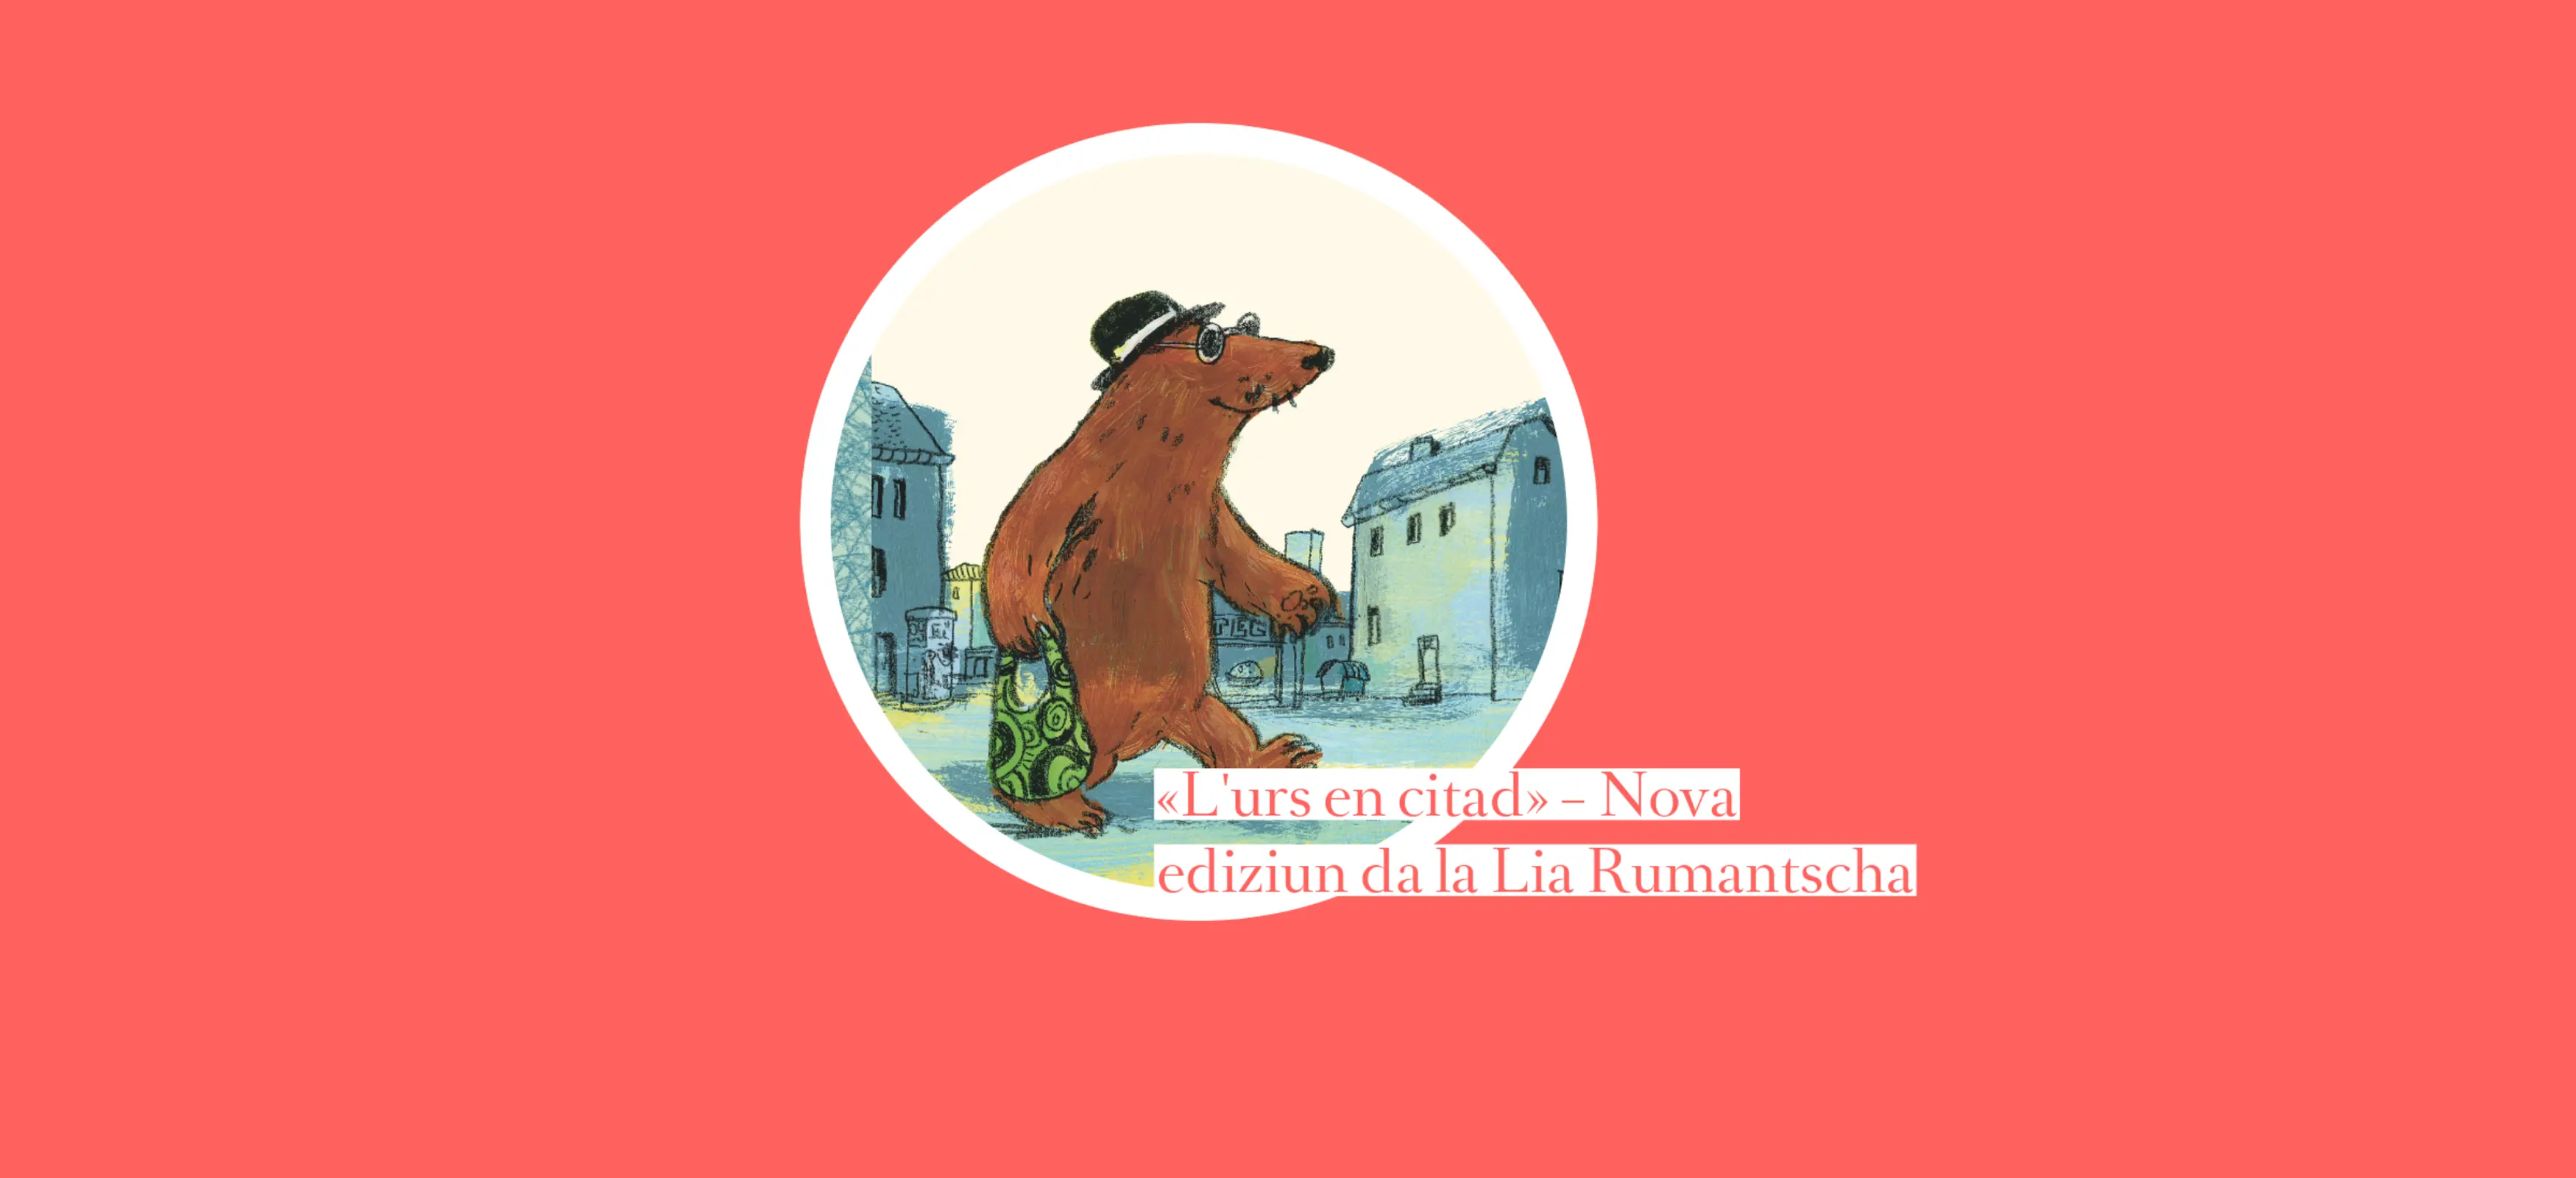 Nova ediziun da la Lia Rumantscha: L'urs en citad.